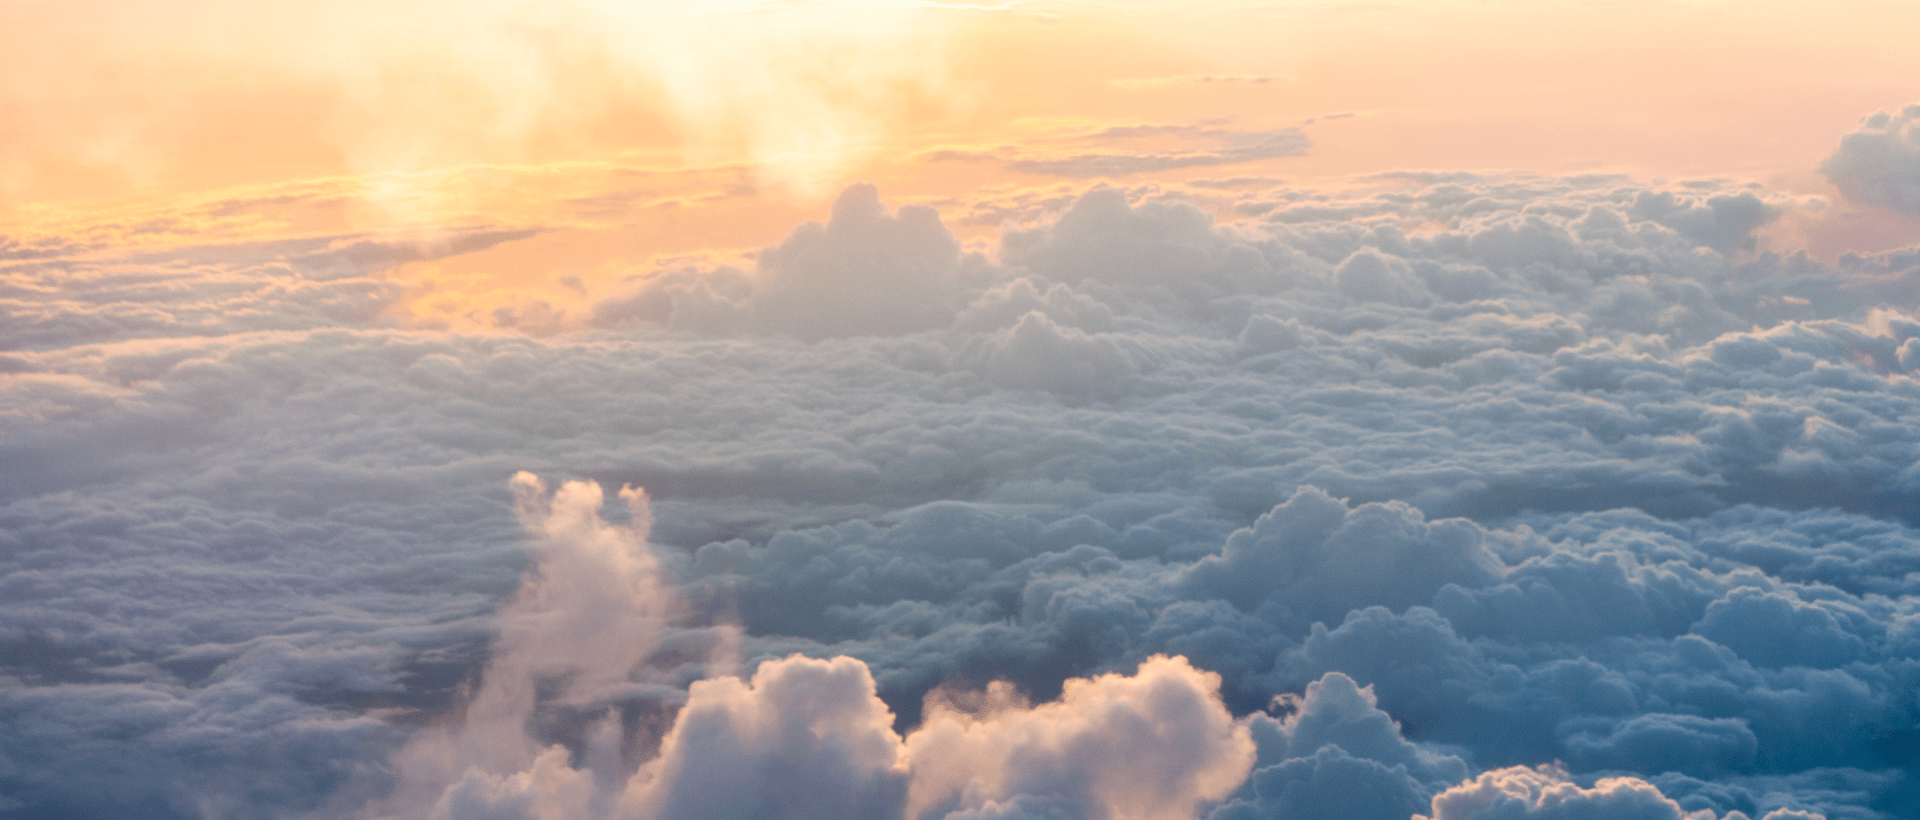 Ein Wolkenmeer erstreckt sich über das Bild sinnbildlich für Worldbuilding im Storytelling